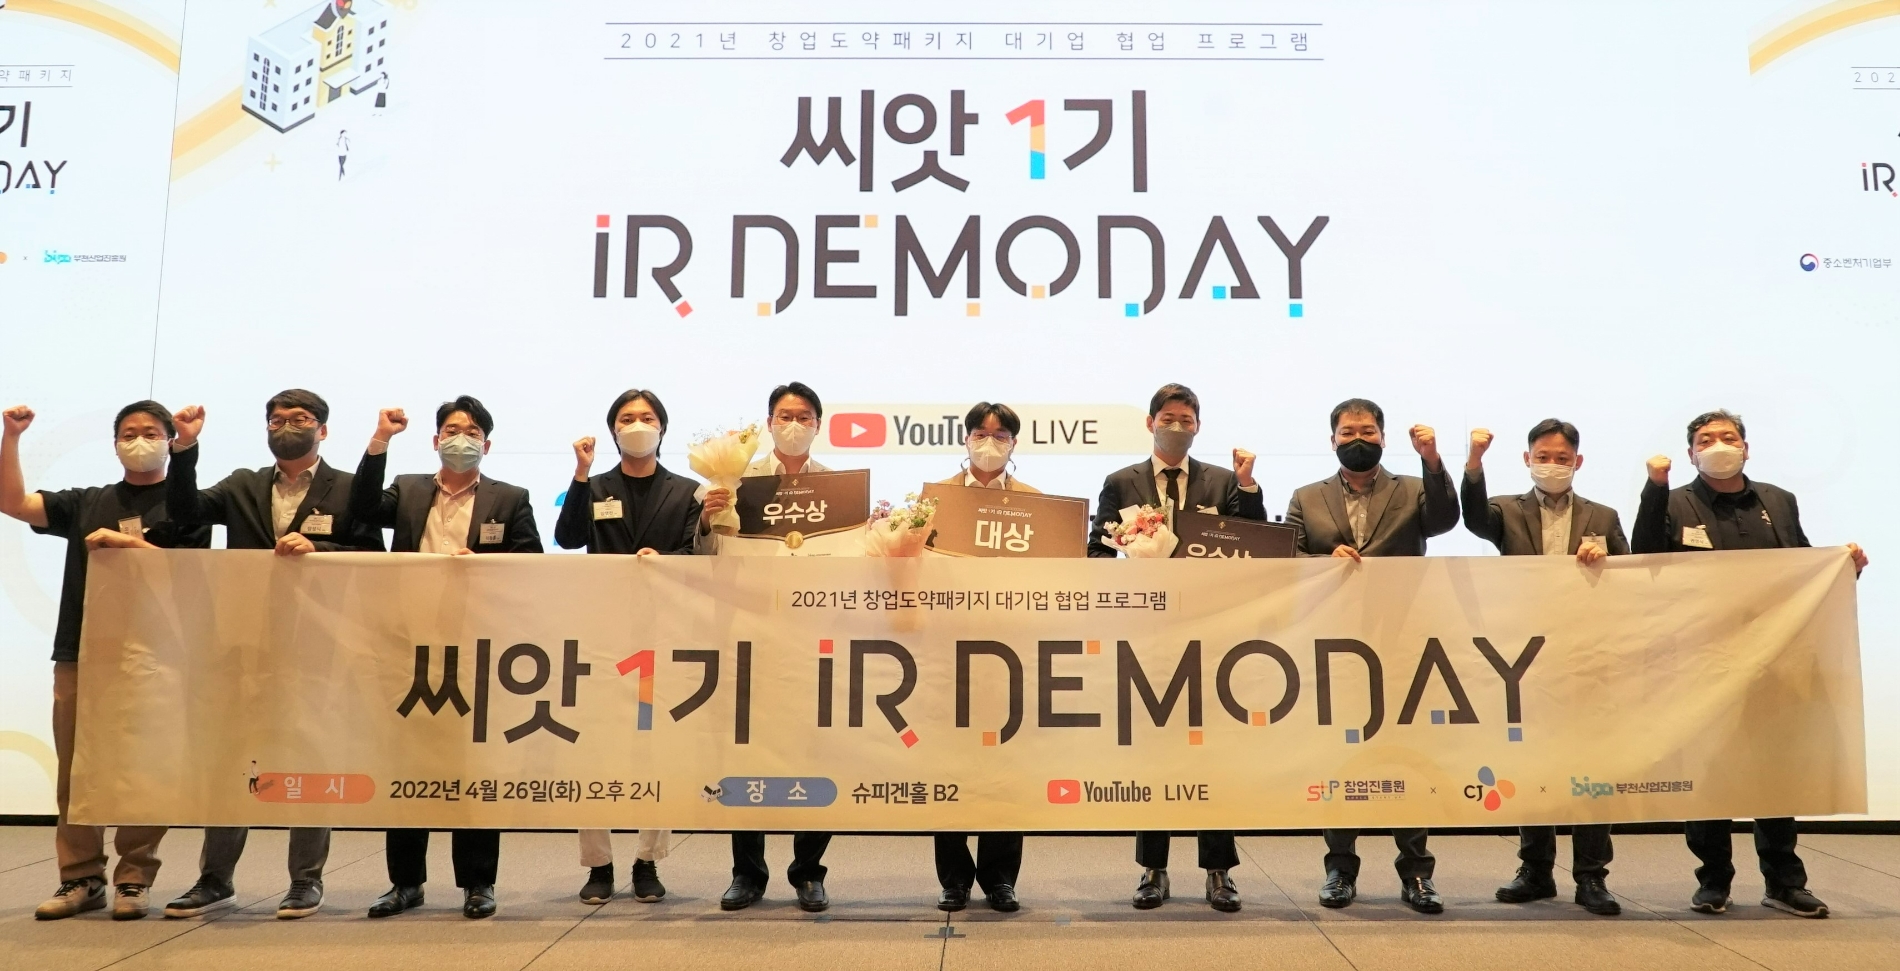 지난 26일 서울 강남구 슈피겐홀에서 진행된 CJ의 오픈 이노베이션 프로그램 '씨앗' 1기 데모데이를 마친 후 참가자들이 기념사진 촬영을 하고 있는 모습./사진제공=CJ그룹